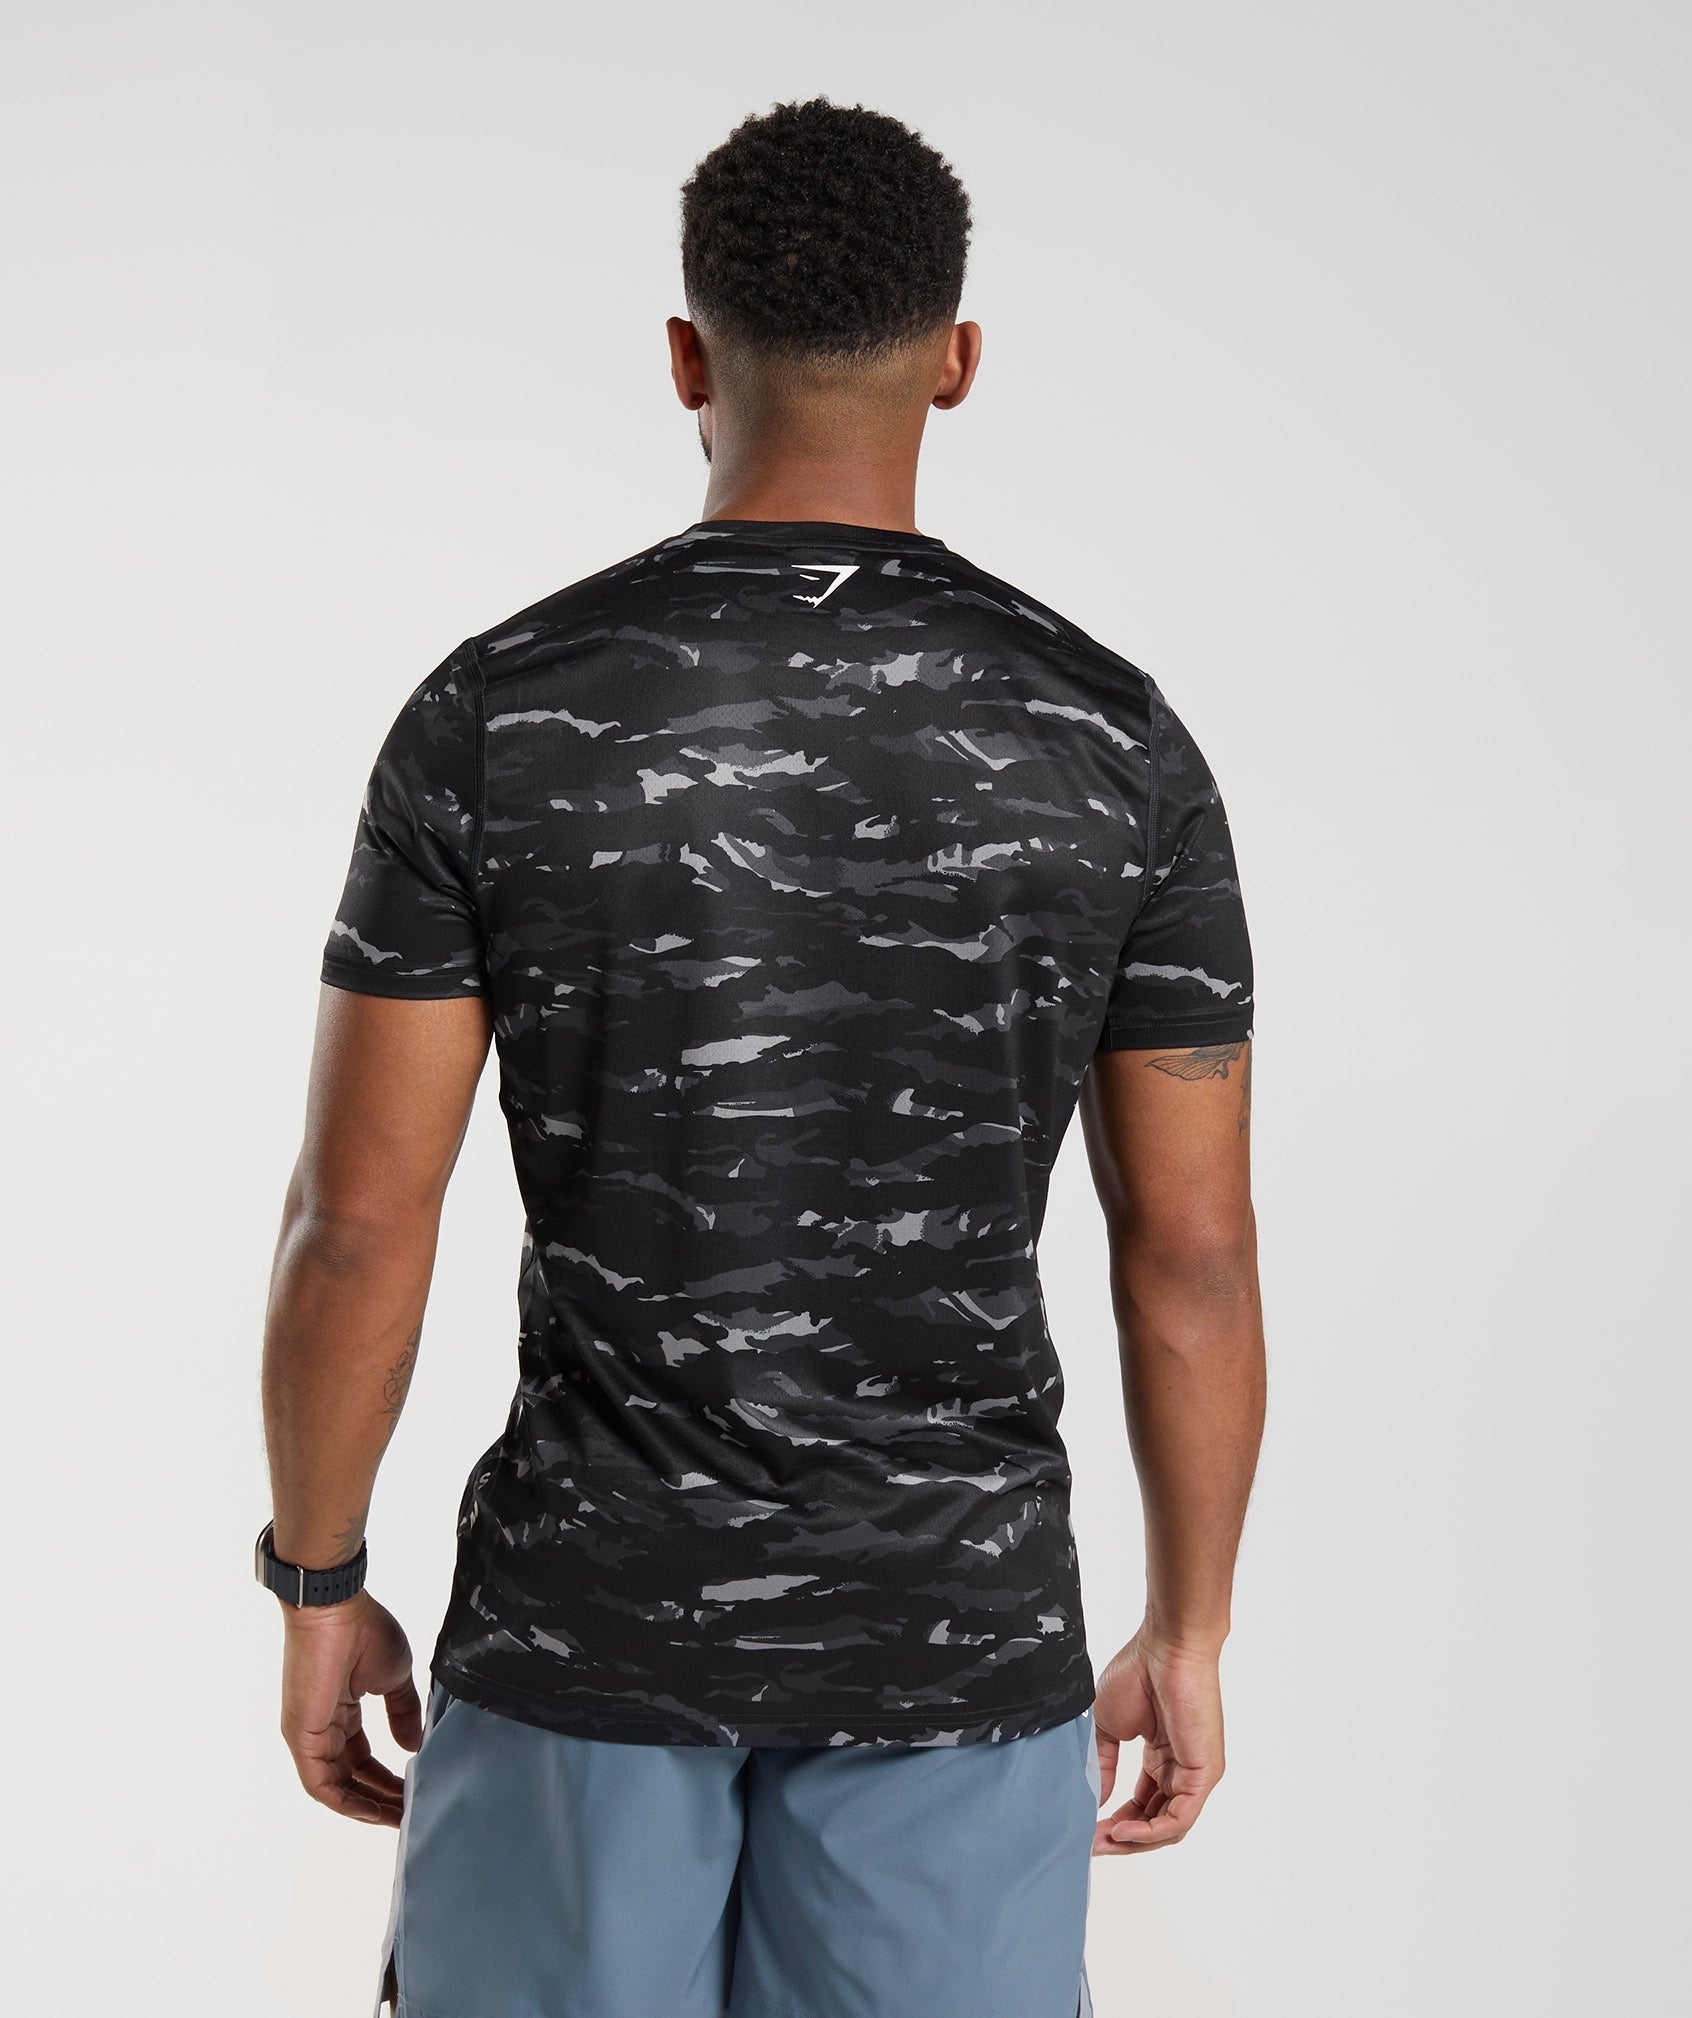 Gymshark 315 Seamless T-Shirt - Winter Teal/Black